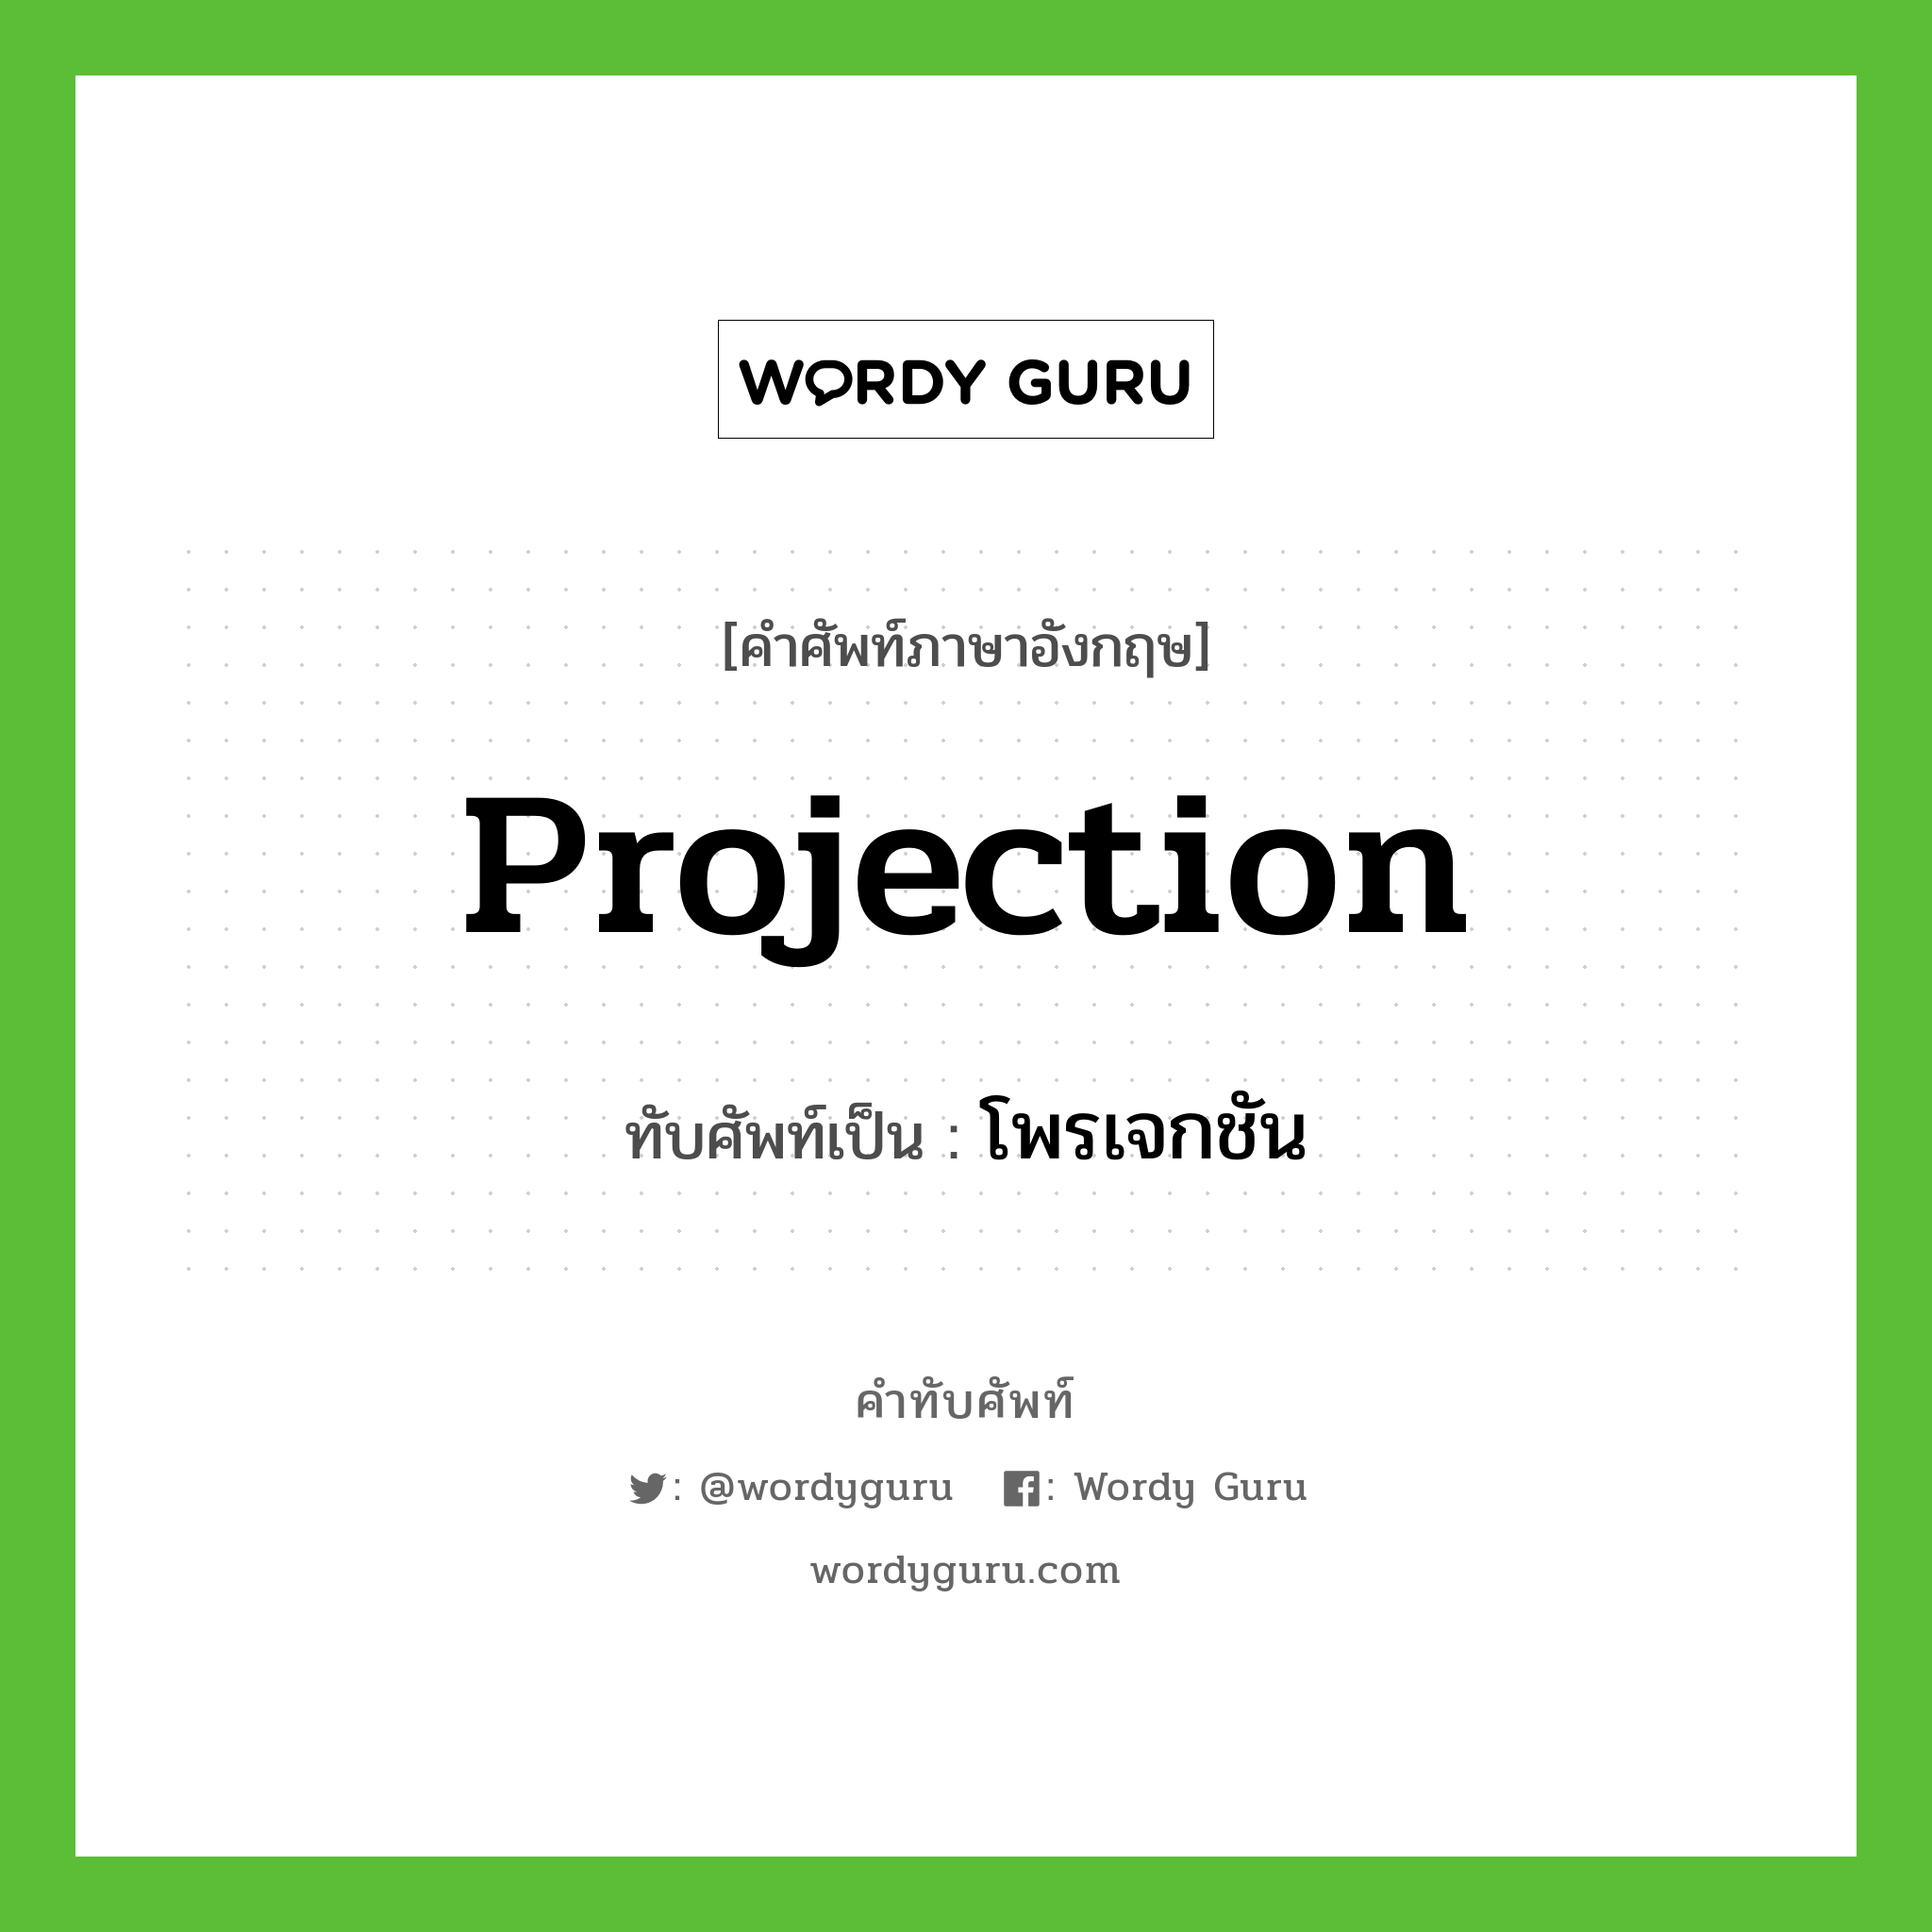 projection เขียนเป็นคำไทยว่าอะไร?, คำศัพท์ภาษาอังกฤษ projection ทับศัพท์เป็น โพรเจกชัน